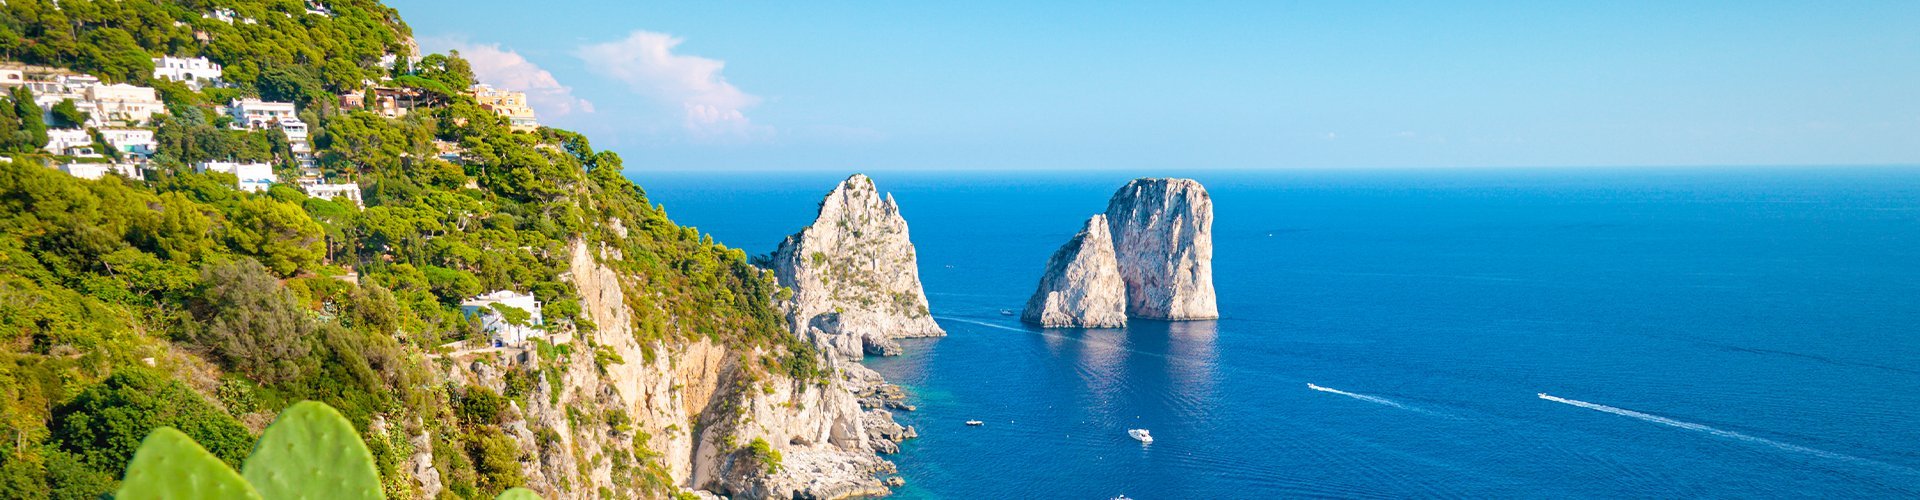 Familienurlaub auf Capri